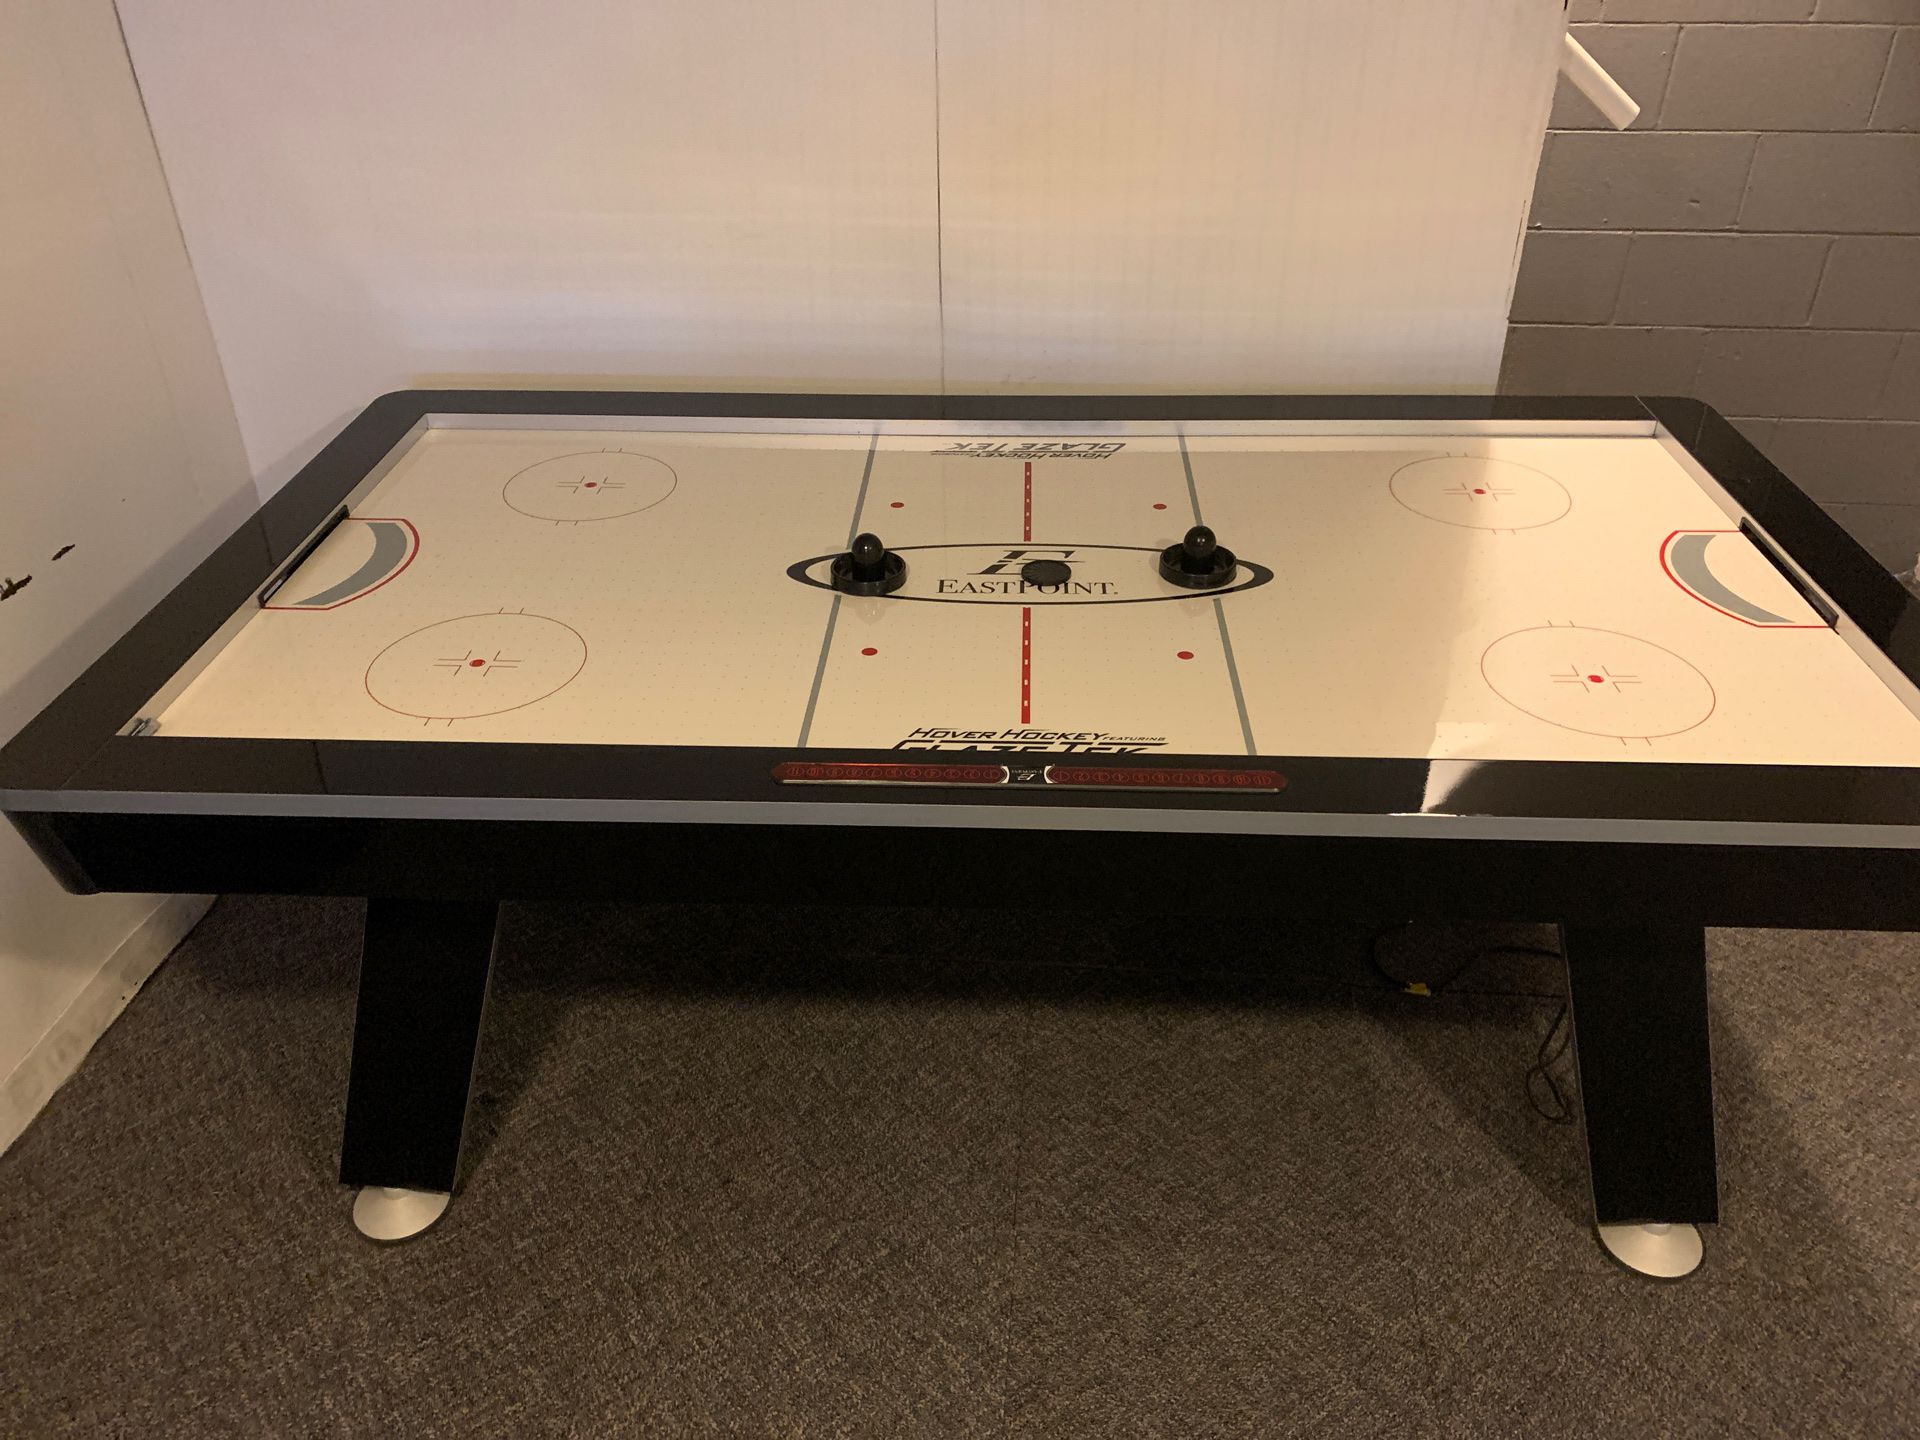 Air hockey table 4x7